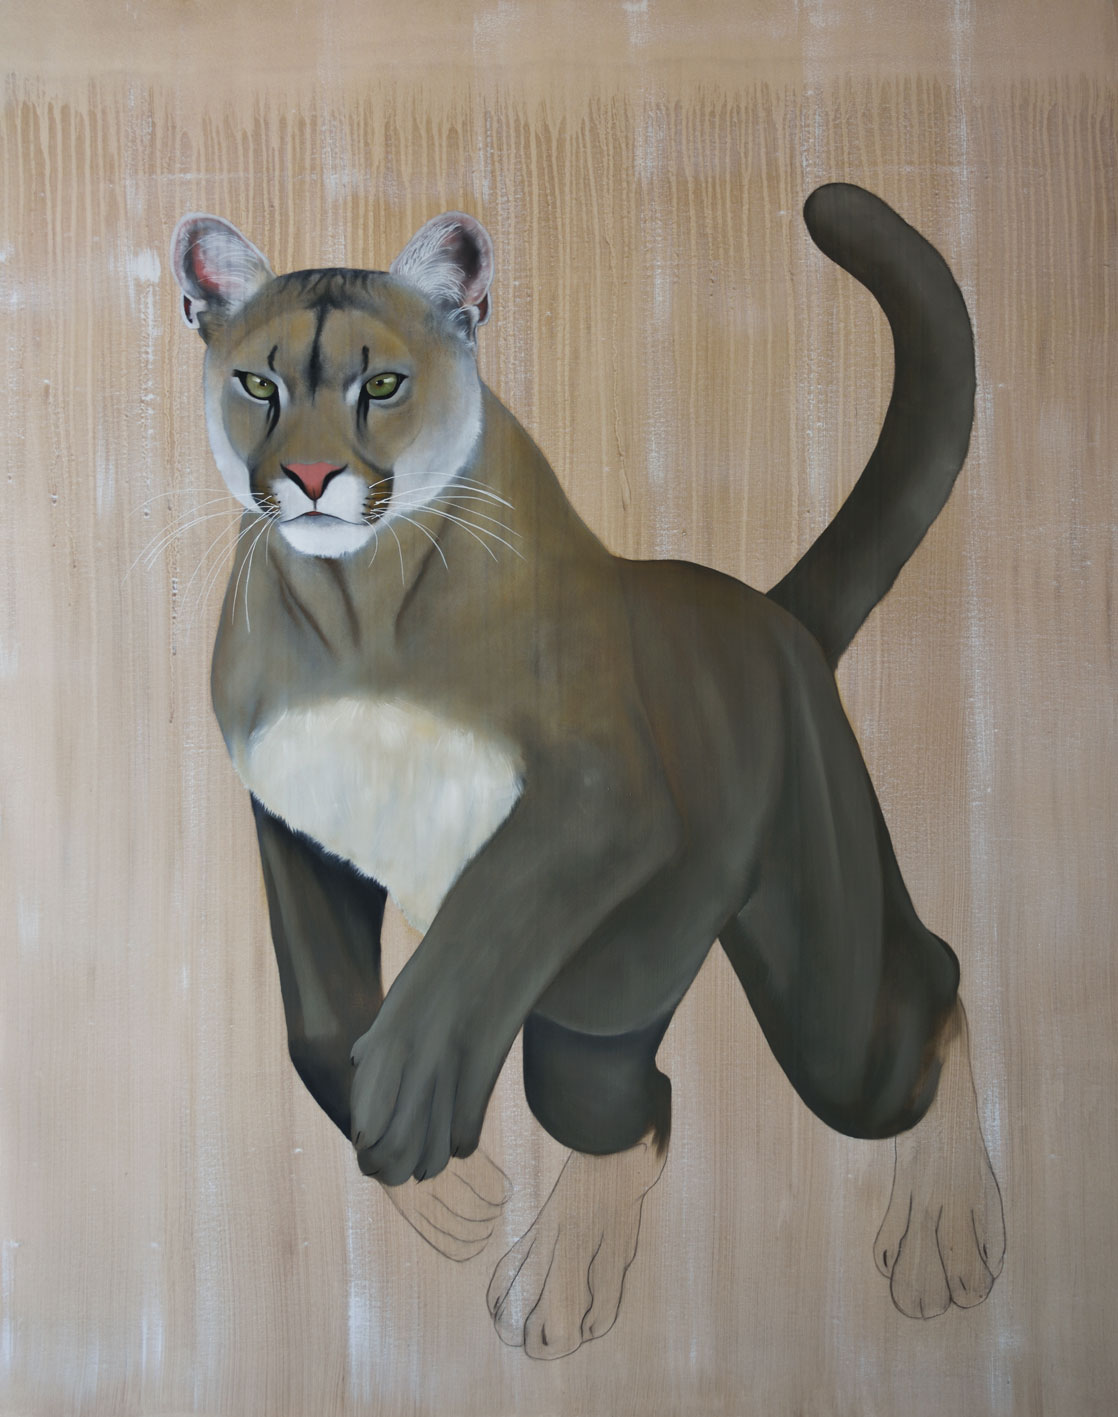 PUMA CONCOLOR CORYI panthÈre-de-floride-puma-cougar Thierry Bisch artiste peintre contemporain animaux tableau art décoration biodiversité conservation 